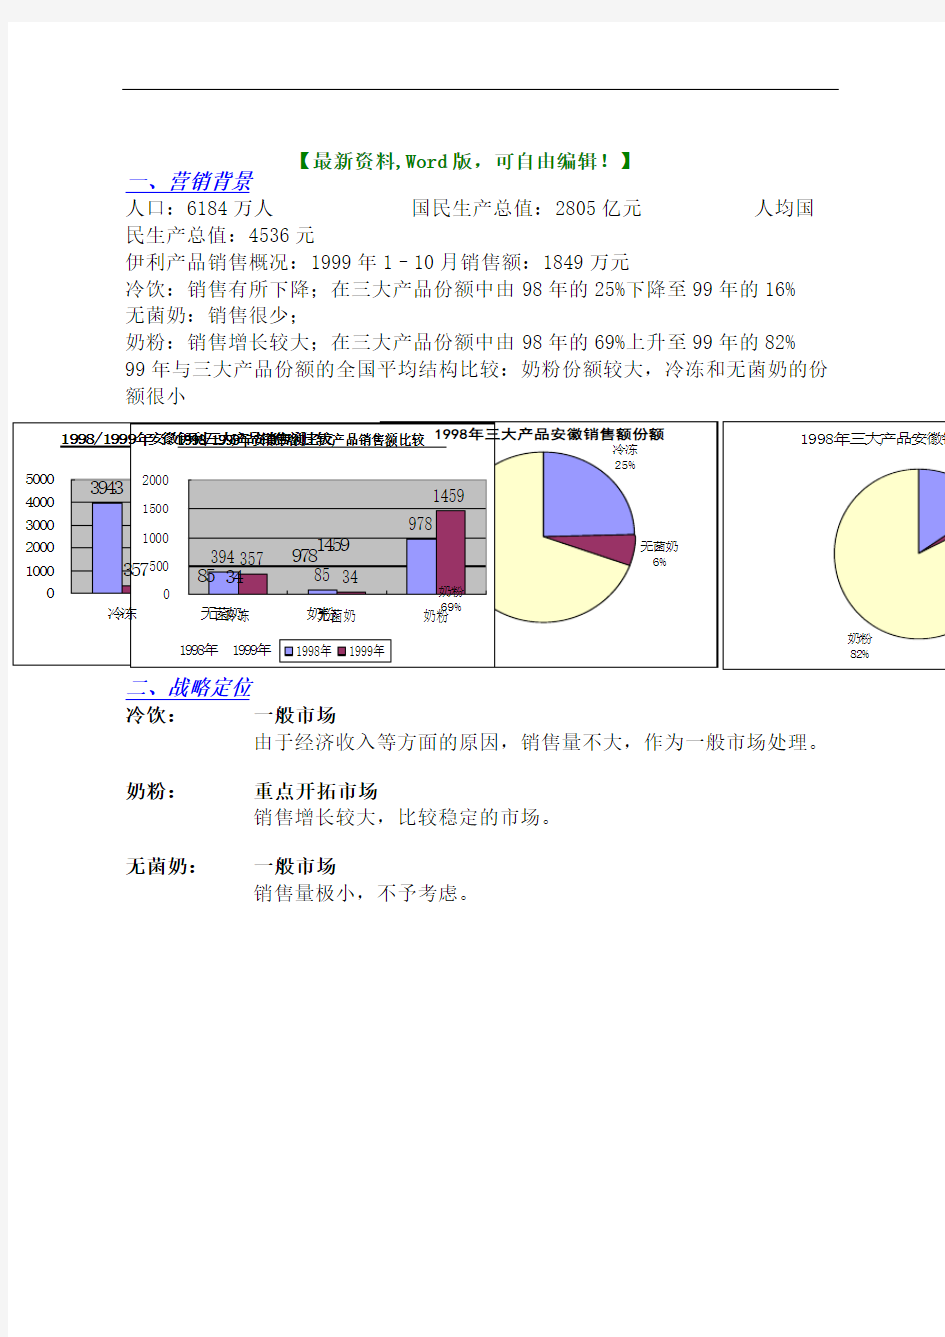 伊利集团安徽省市场营销计划营销策划报告方案(终审稿)